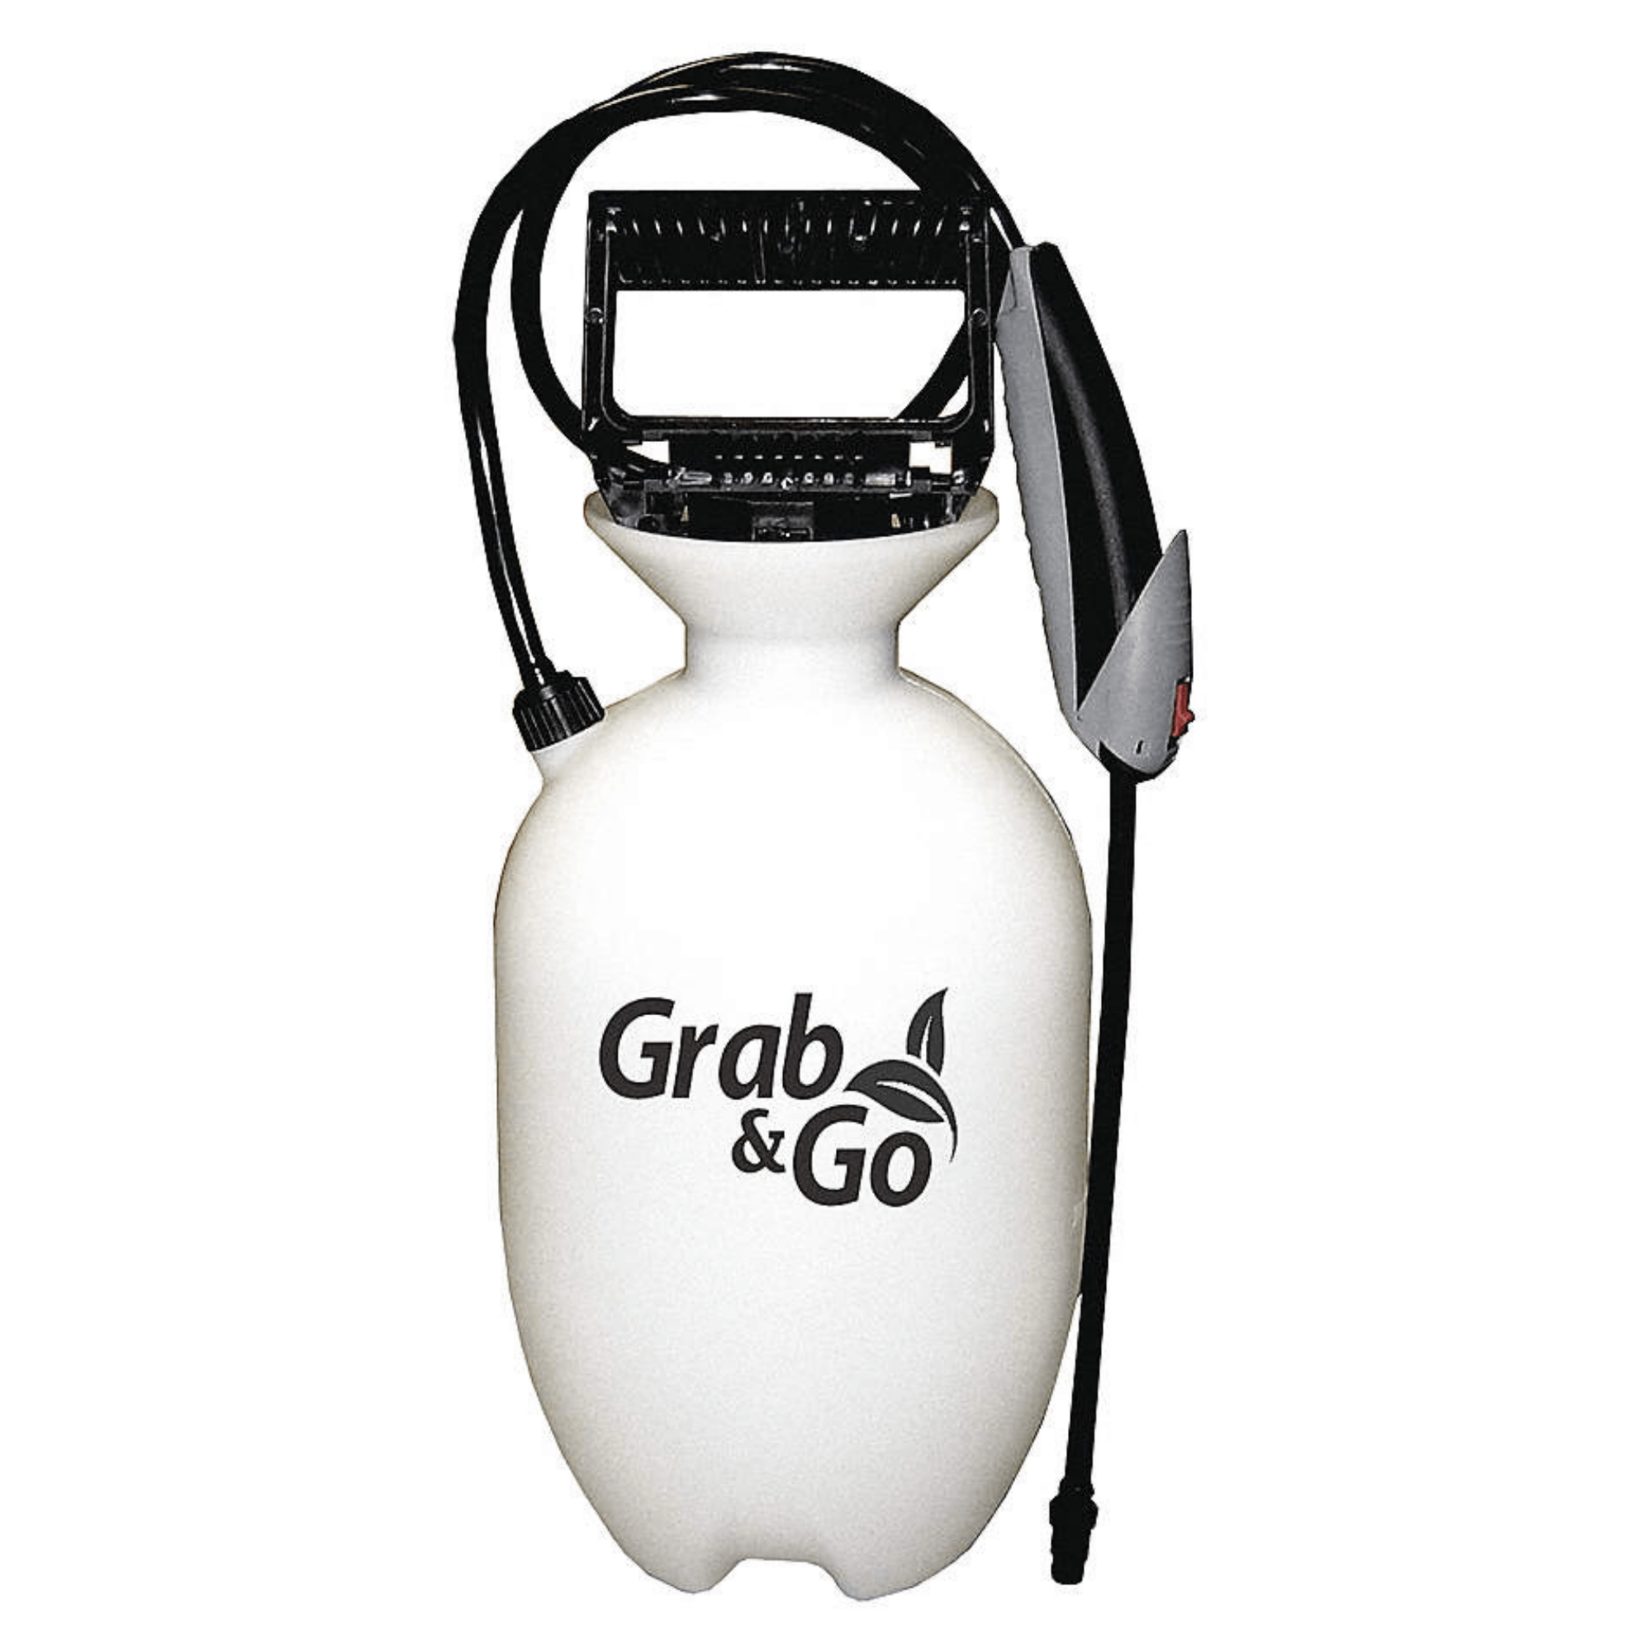 Grab & Go Grab & Go Multi-Purpose Sprayer 3.8L